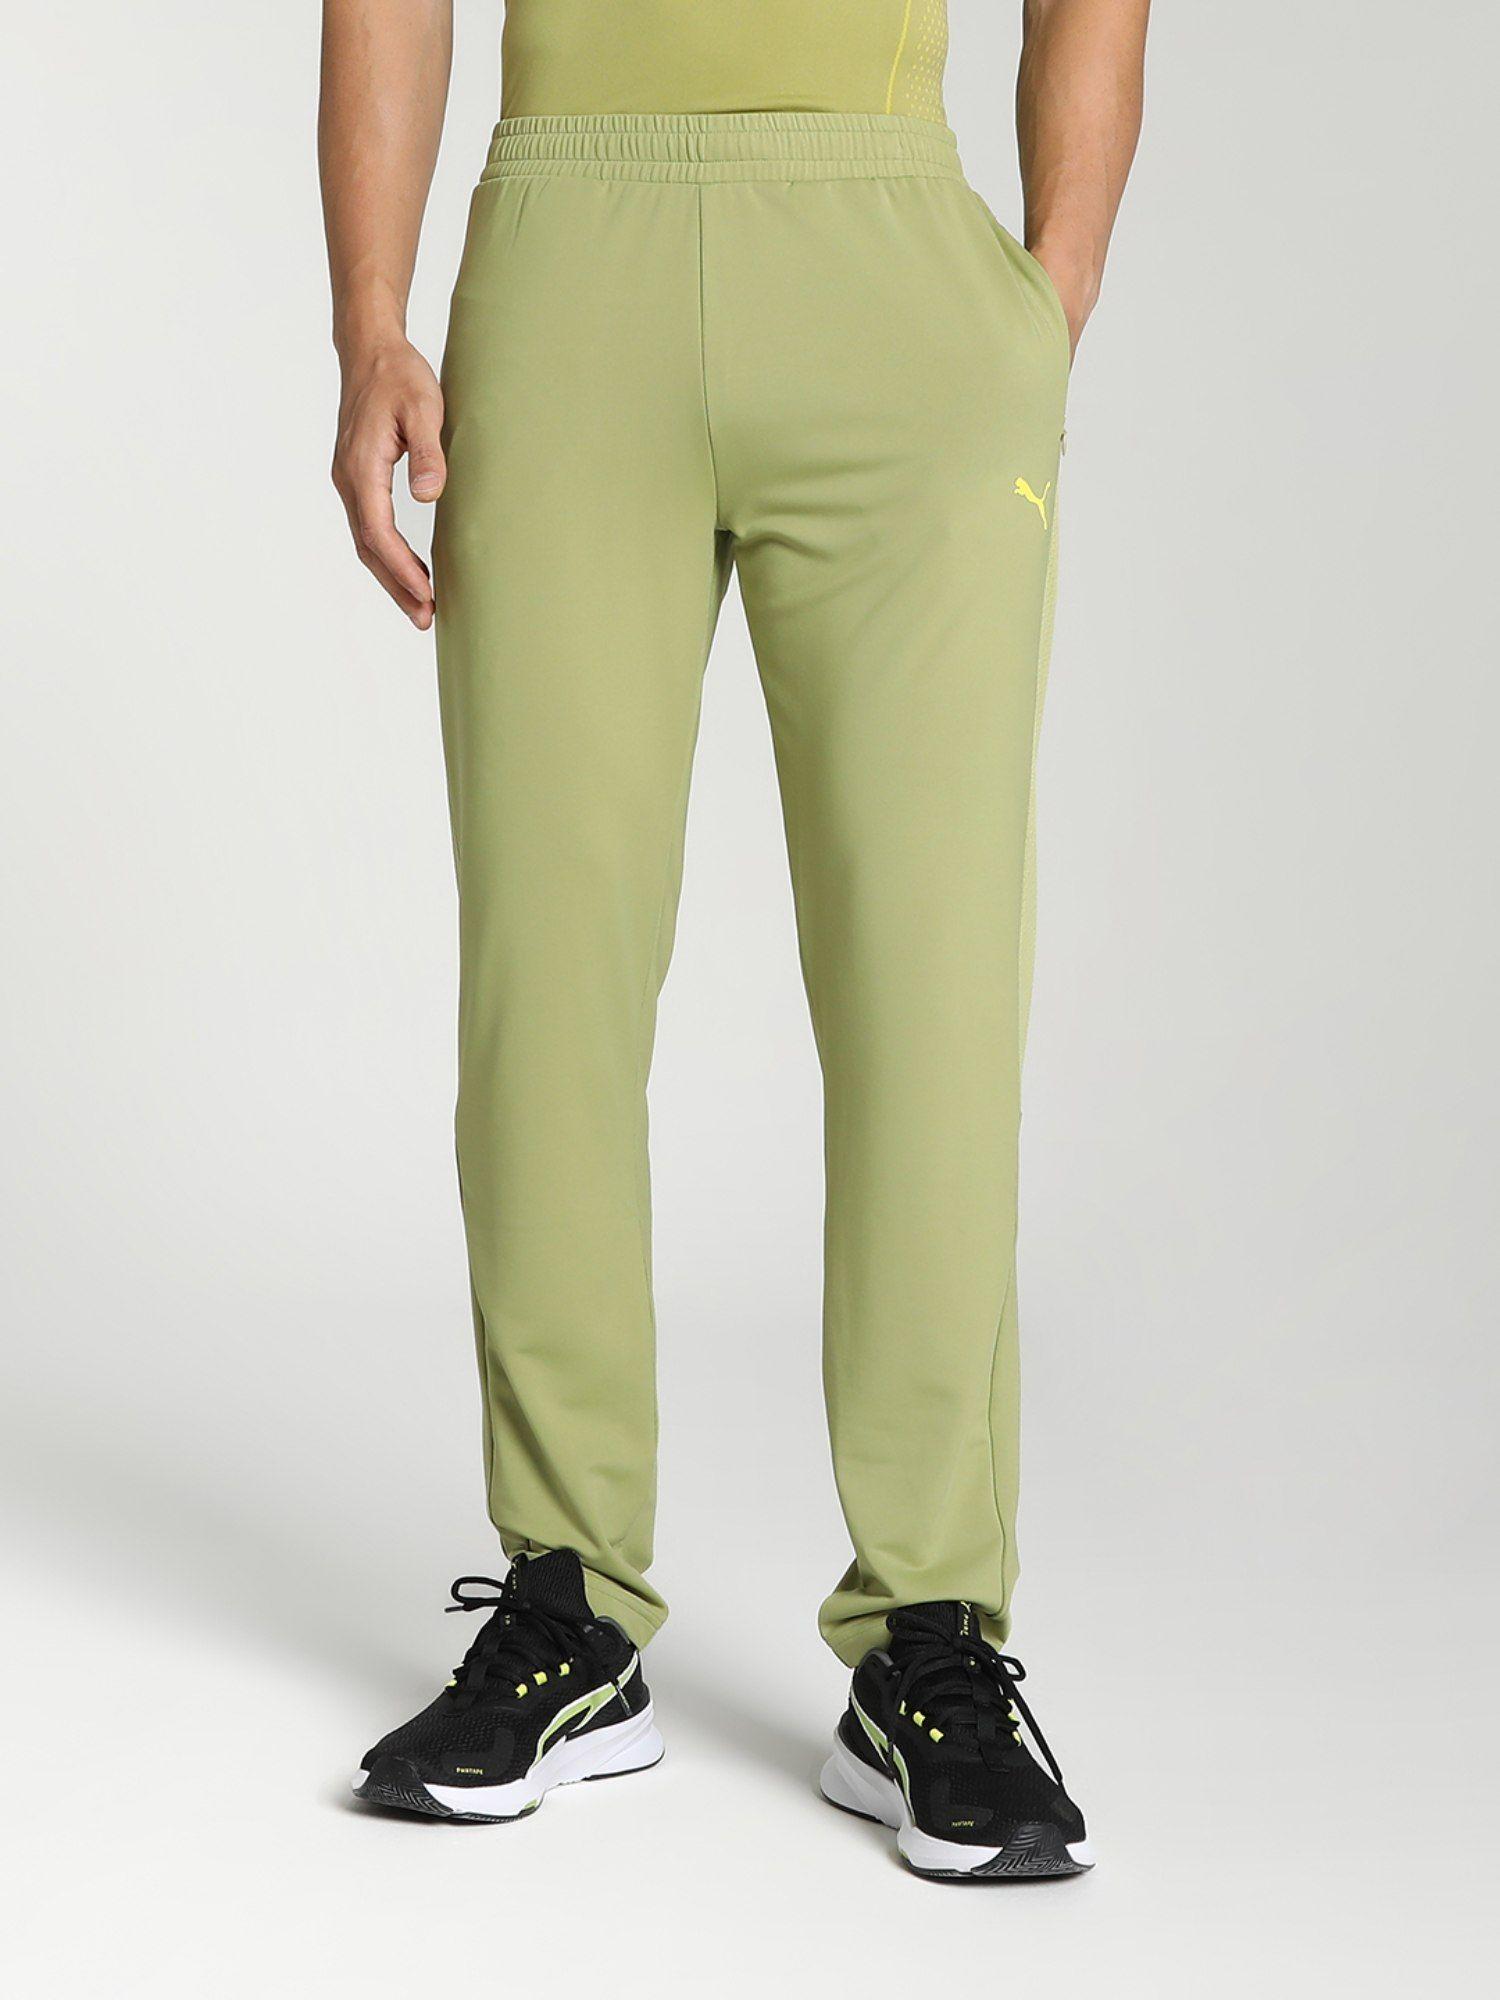 x-one8-active-men-green-sweatpants